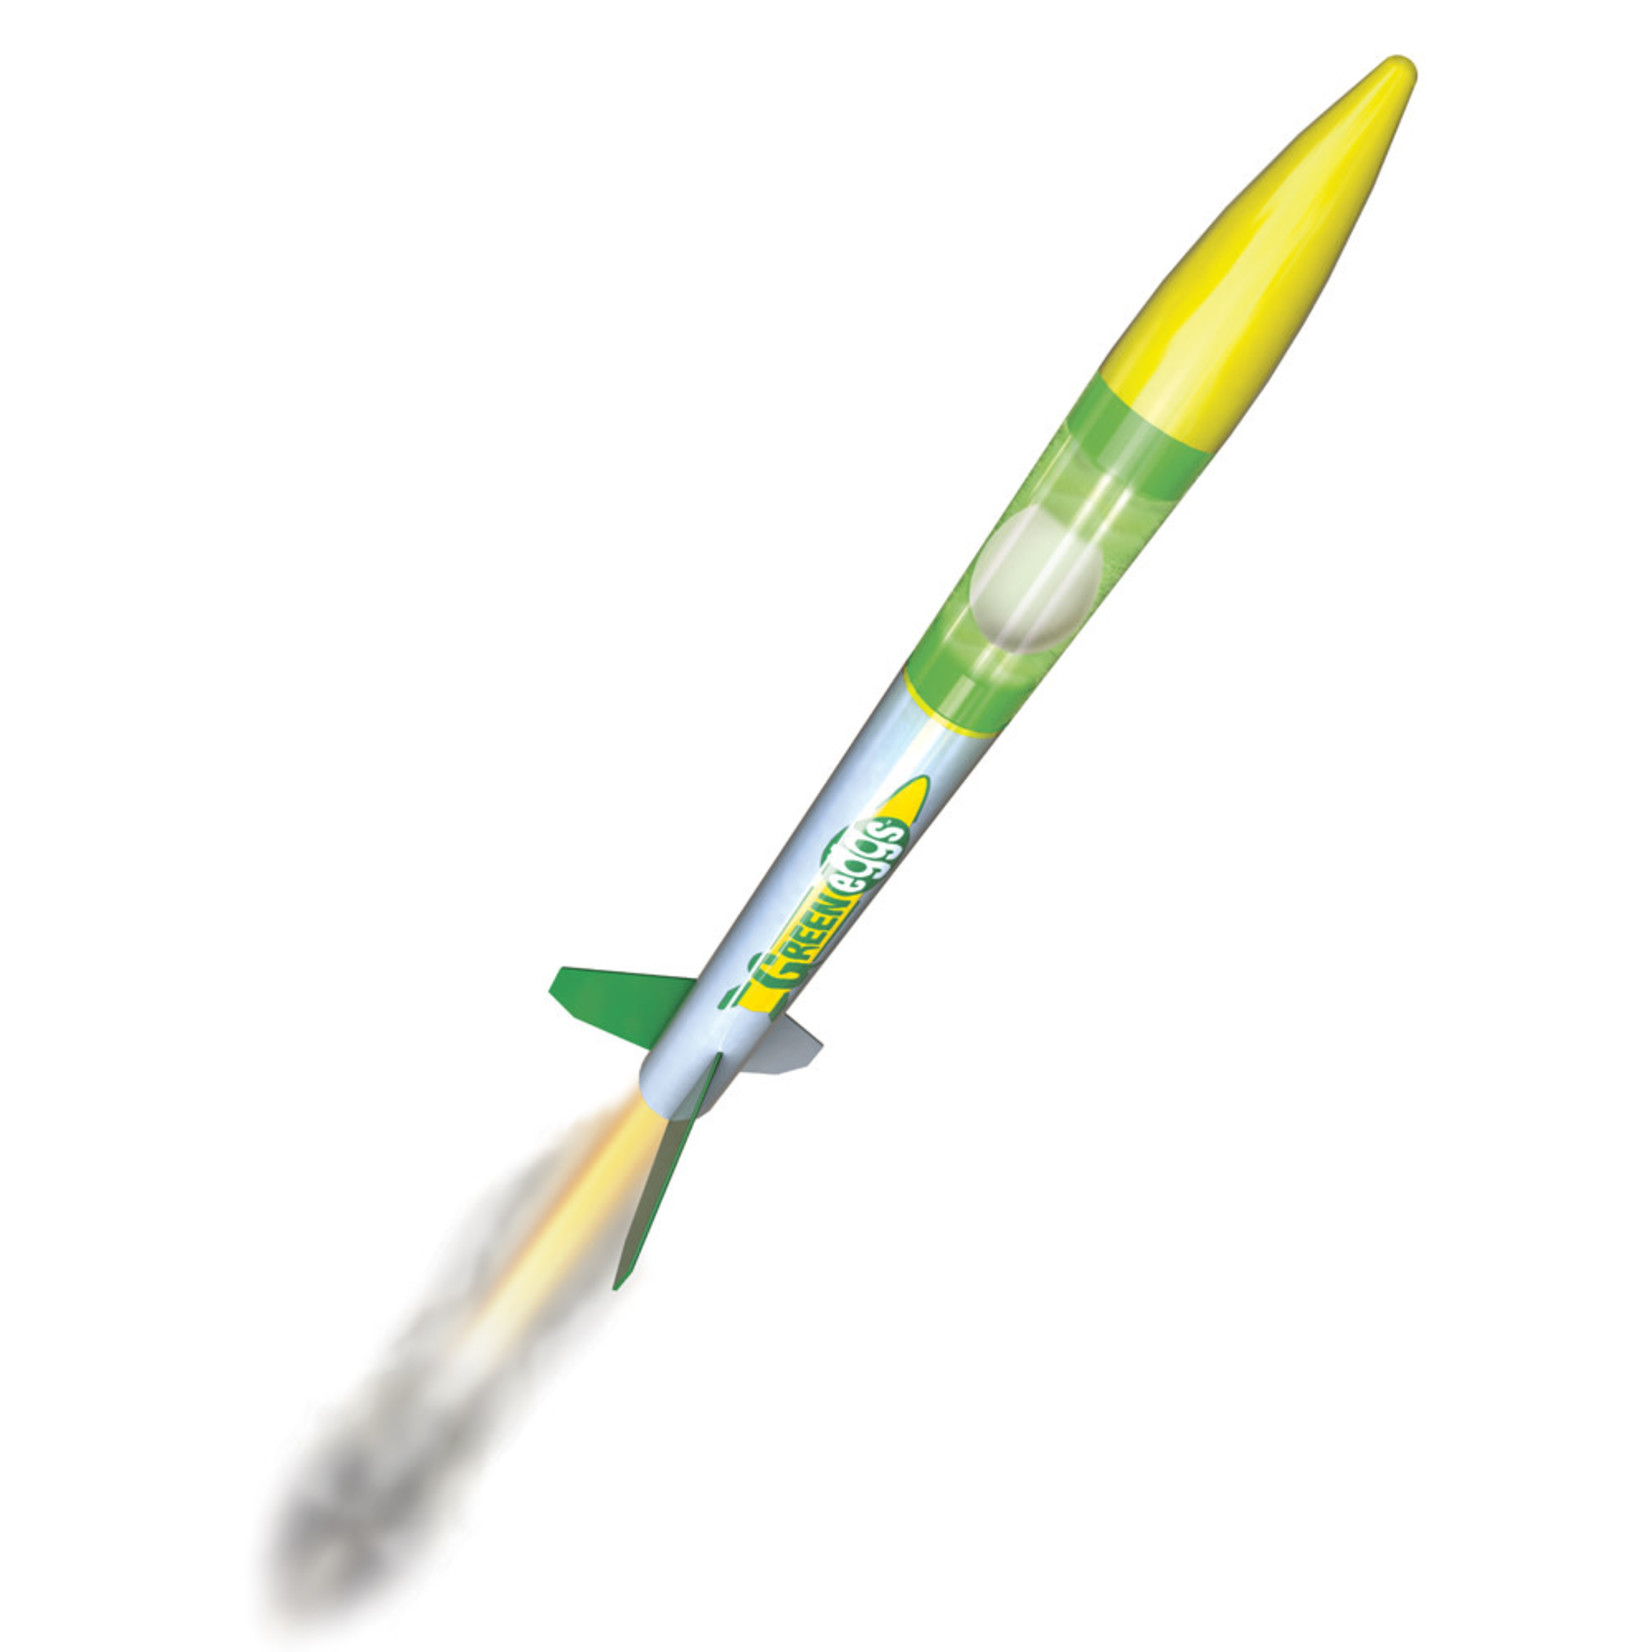 Estes EST7301 Green Eggs Rocket